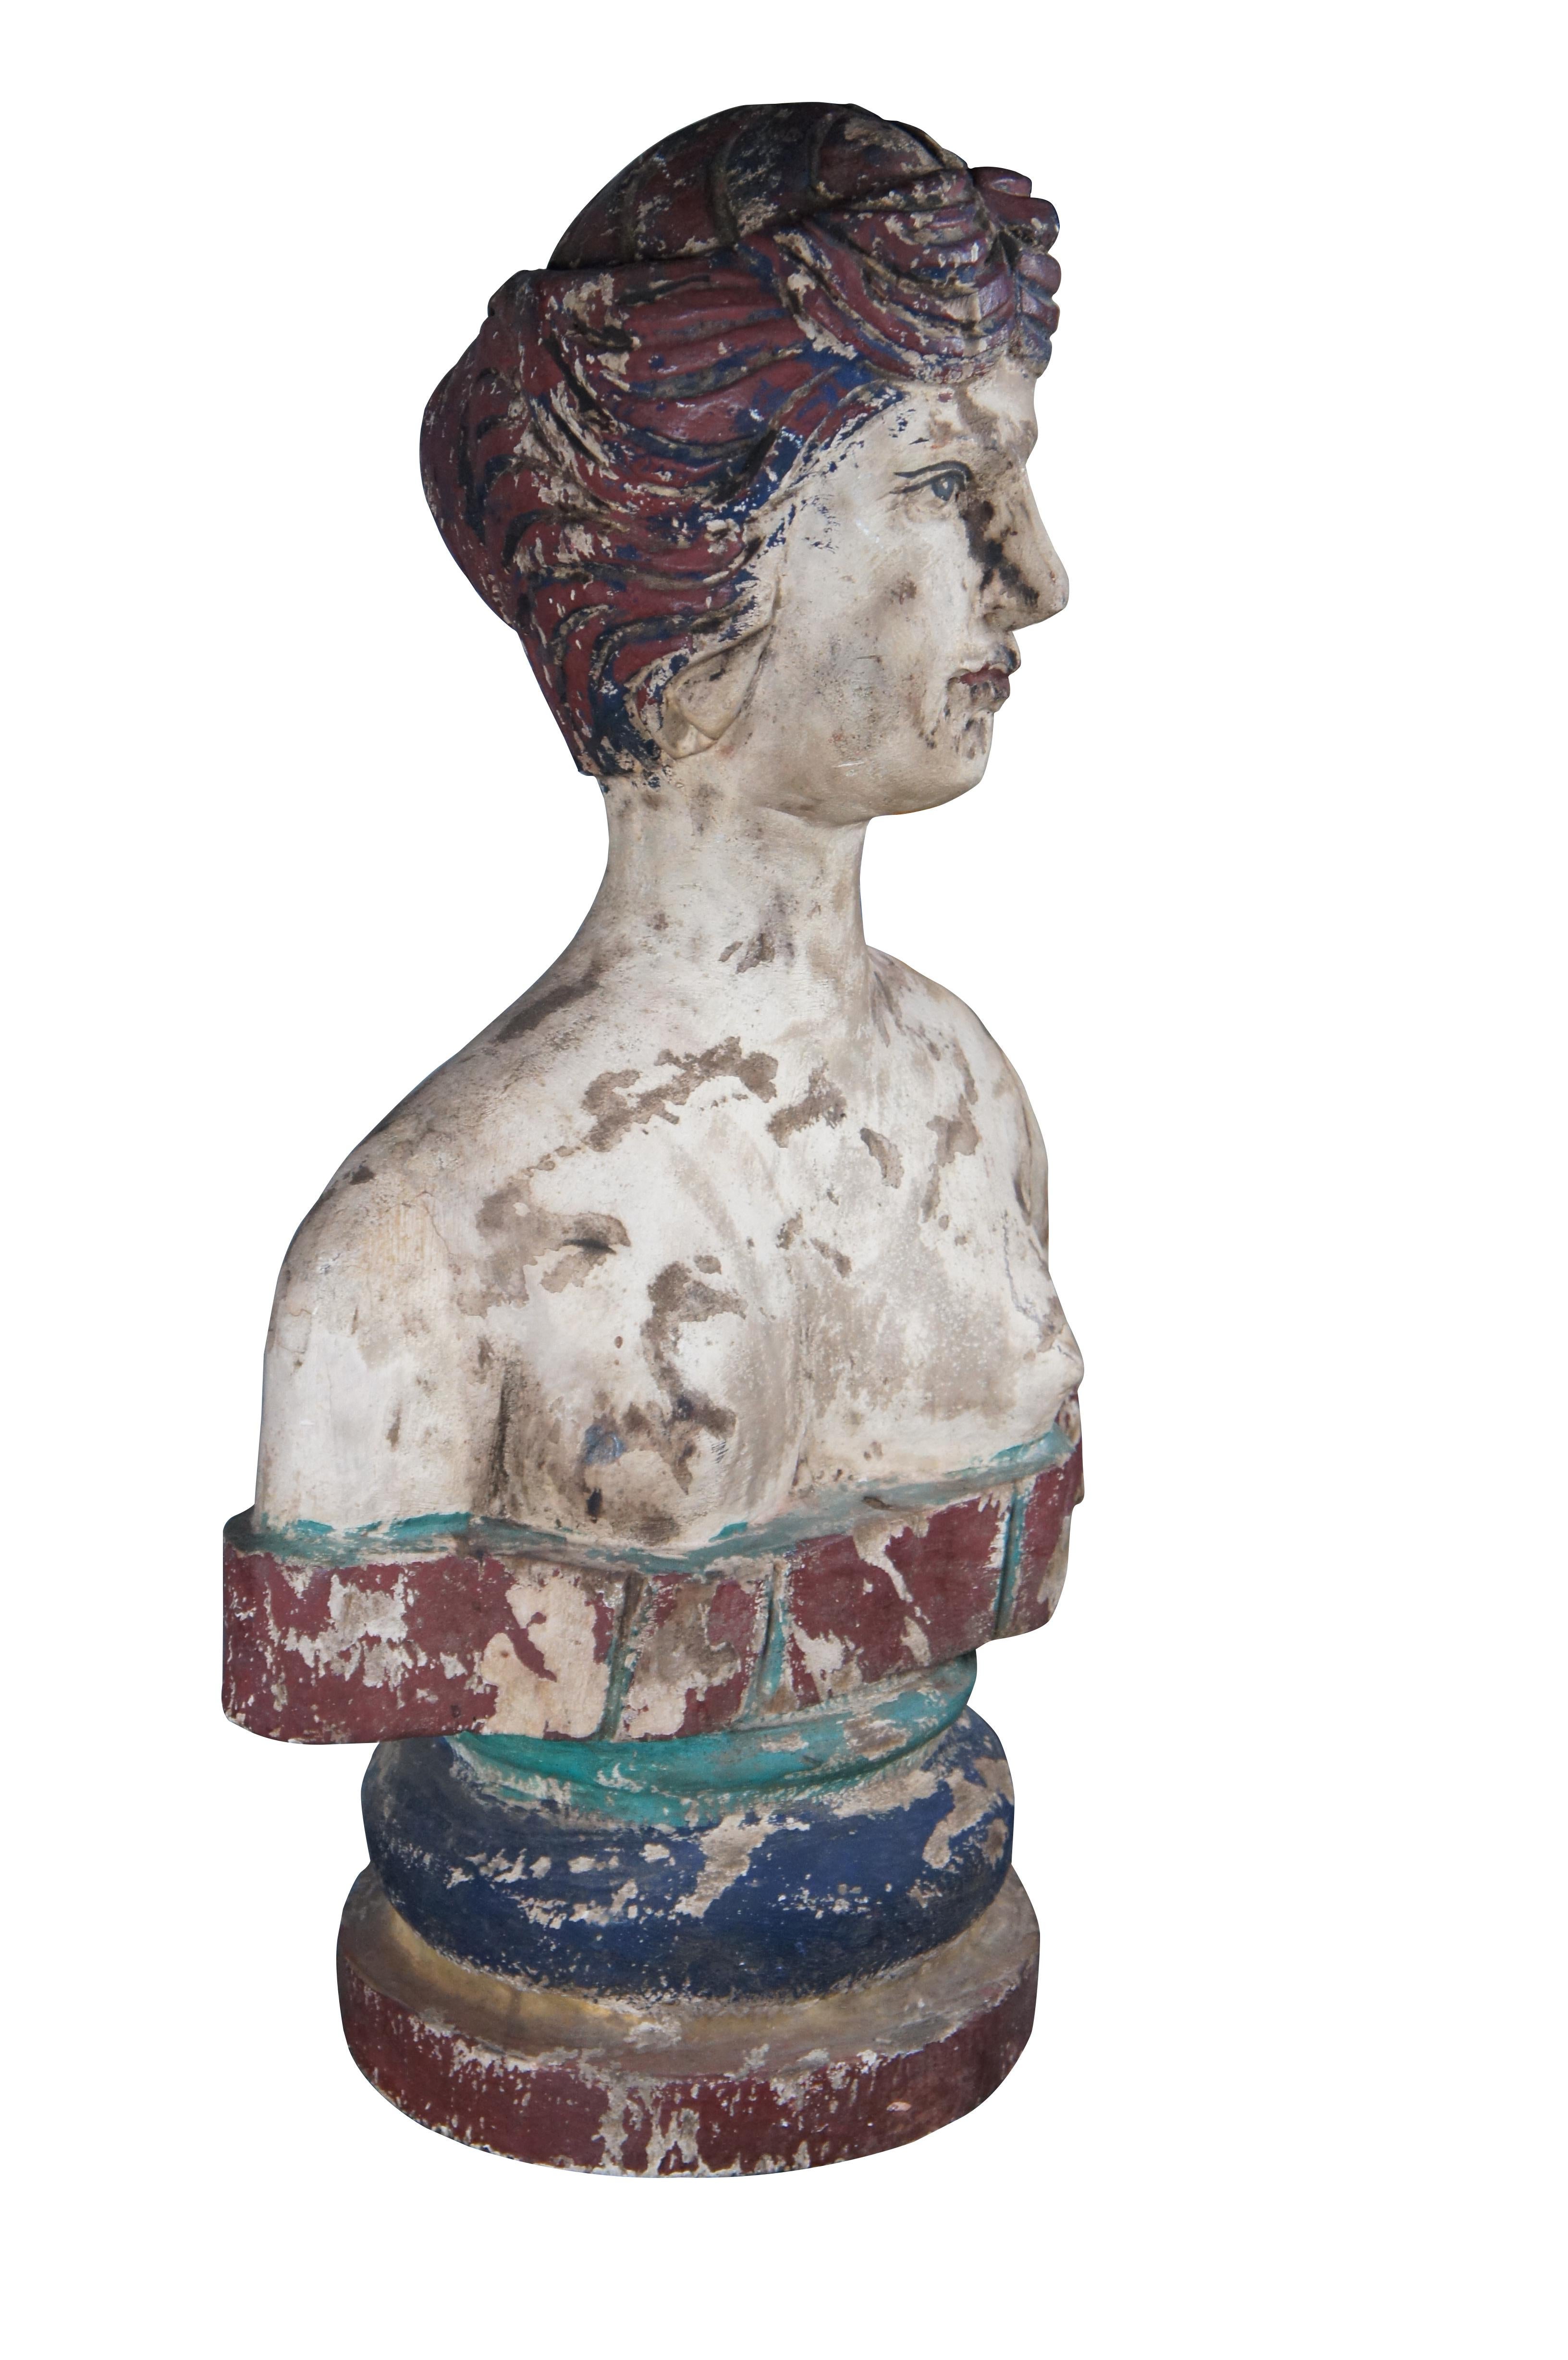 Buste primitif polychrome sculpté à la main. Sculpté dans le bois avec des détails complexes et une patine rustique. Idéal pour une présentation sur un piédestal ou une table.

Dimensions :
17